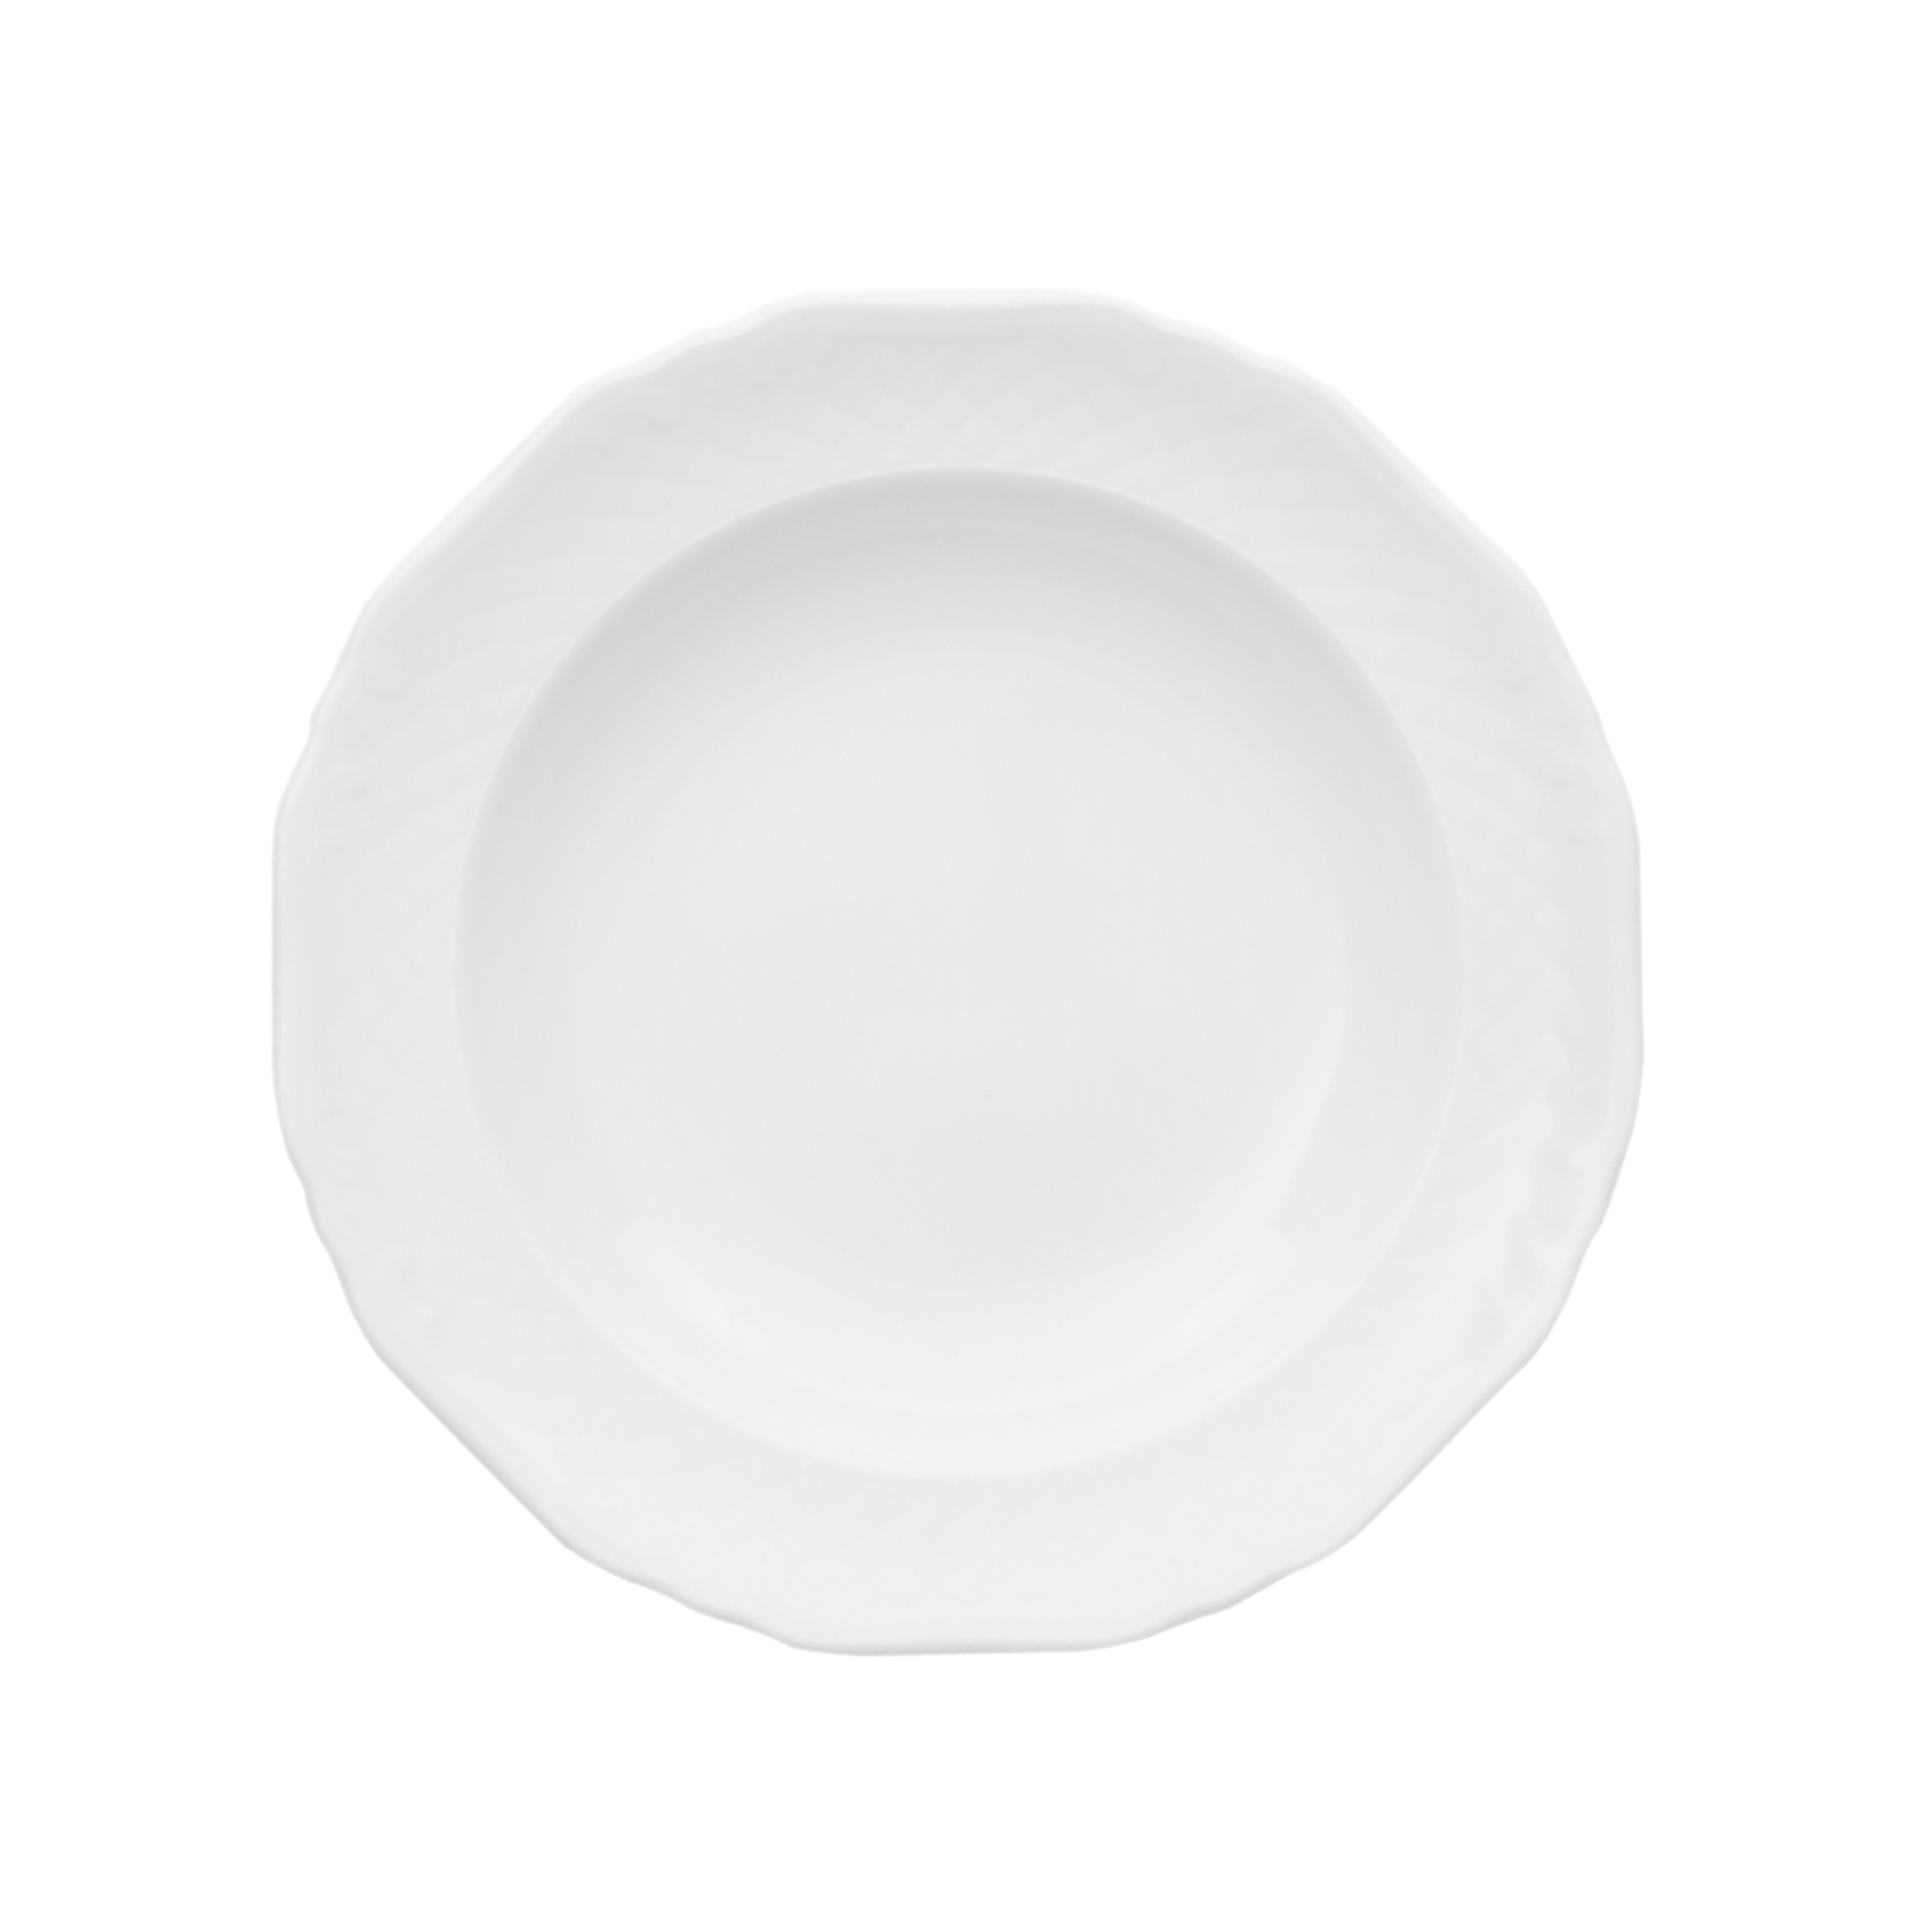 Suppenteller tief - Durchmesser 22,0 cm - Form LA REINE - uni weiß